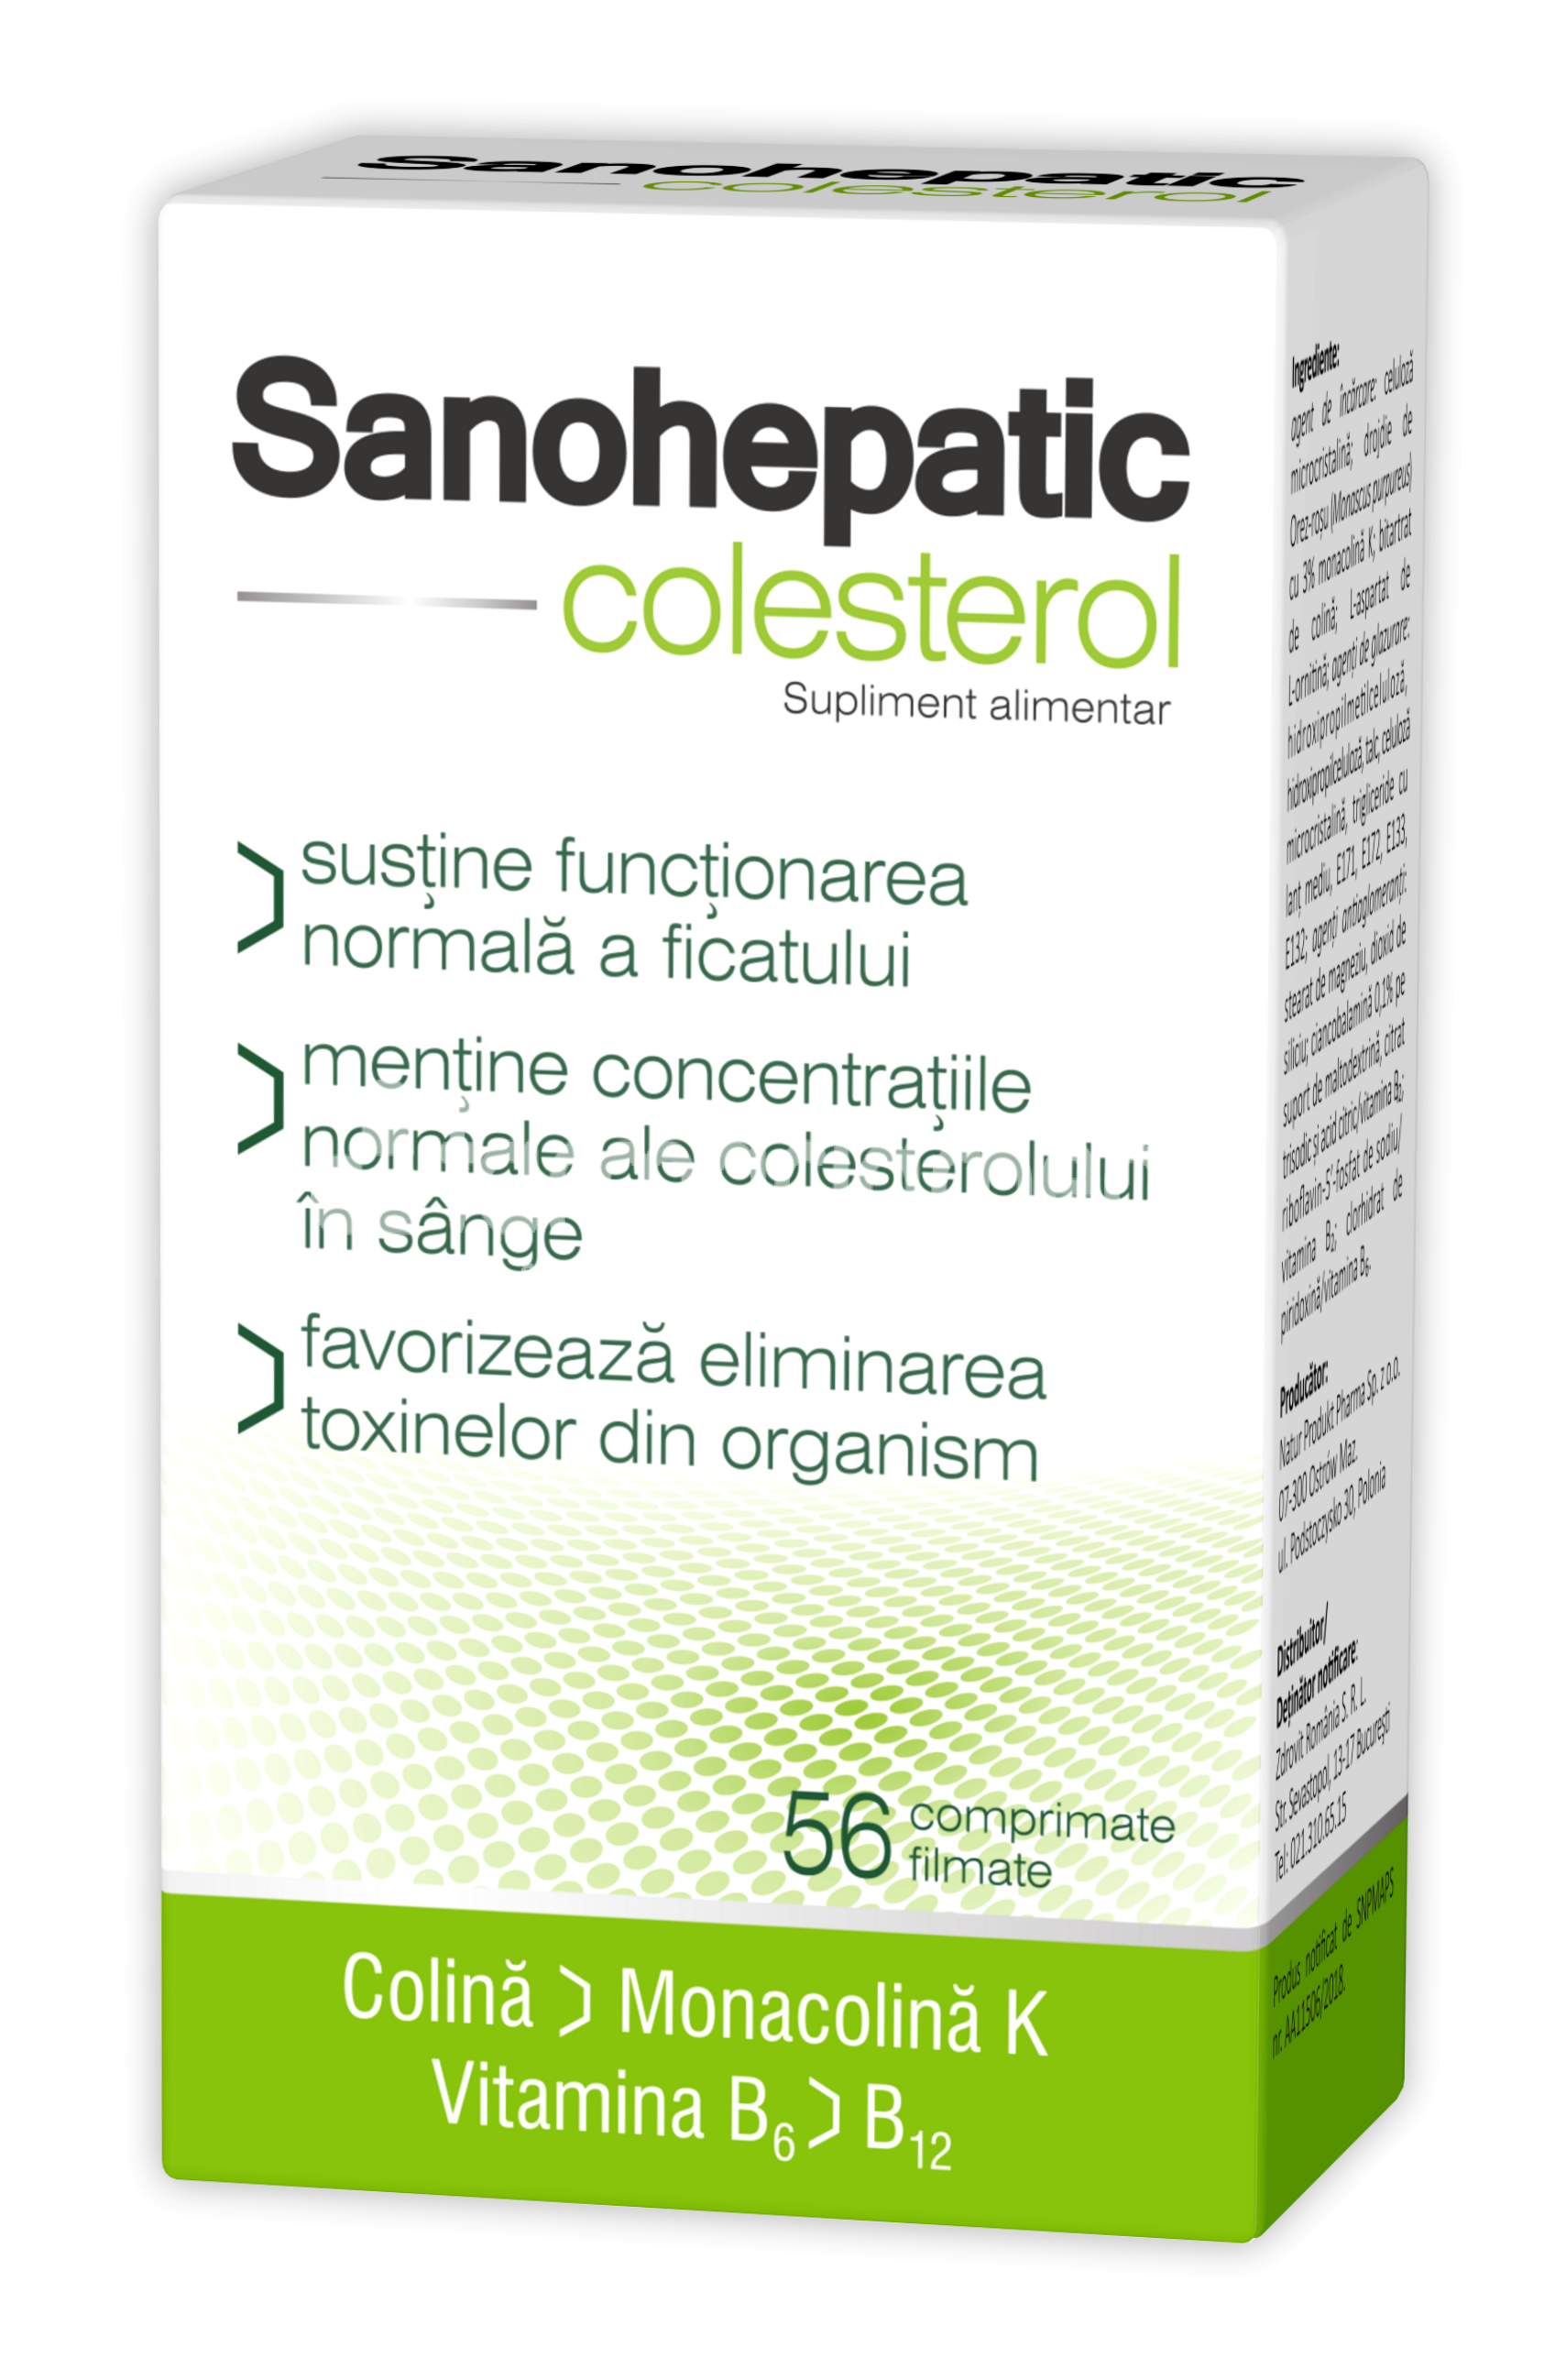 Terapie biliară și hepatică - Sanohepatic colesterol, 56 comprimate, 2 cutii, Zdrovit, farmaciamea.ro